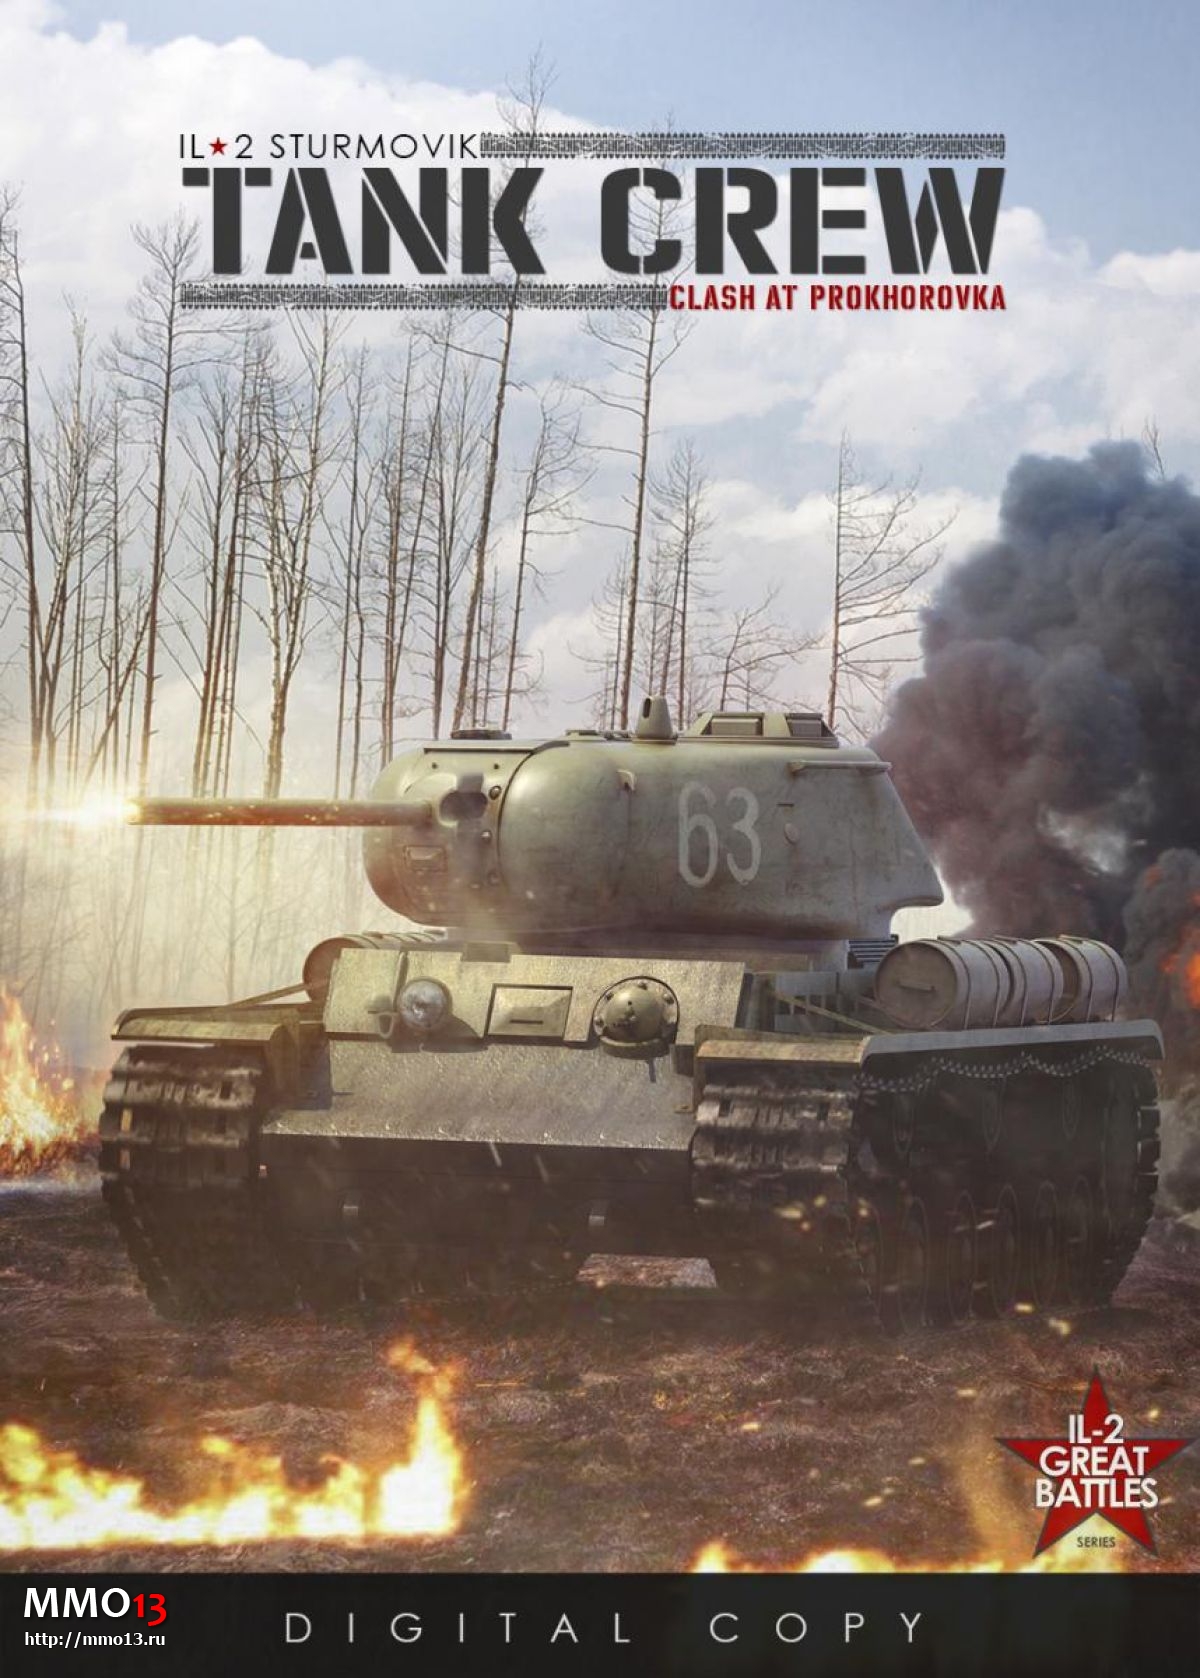 Анонсированы три новые игры в серии ИЛ-2: Штурмовик, включая танковый симулятор Tank Crew